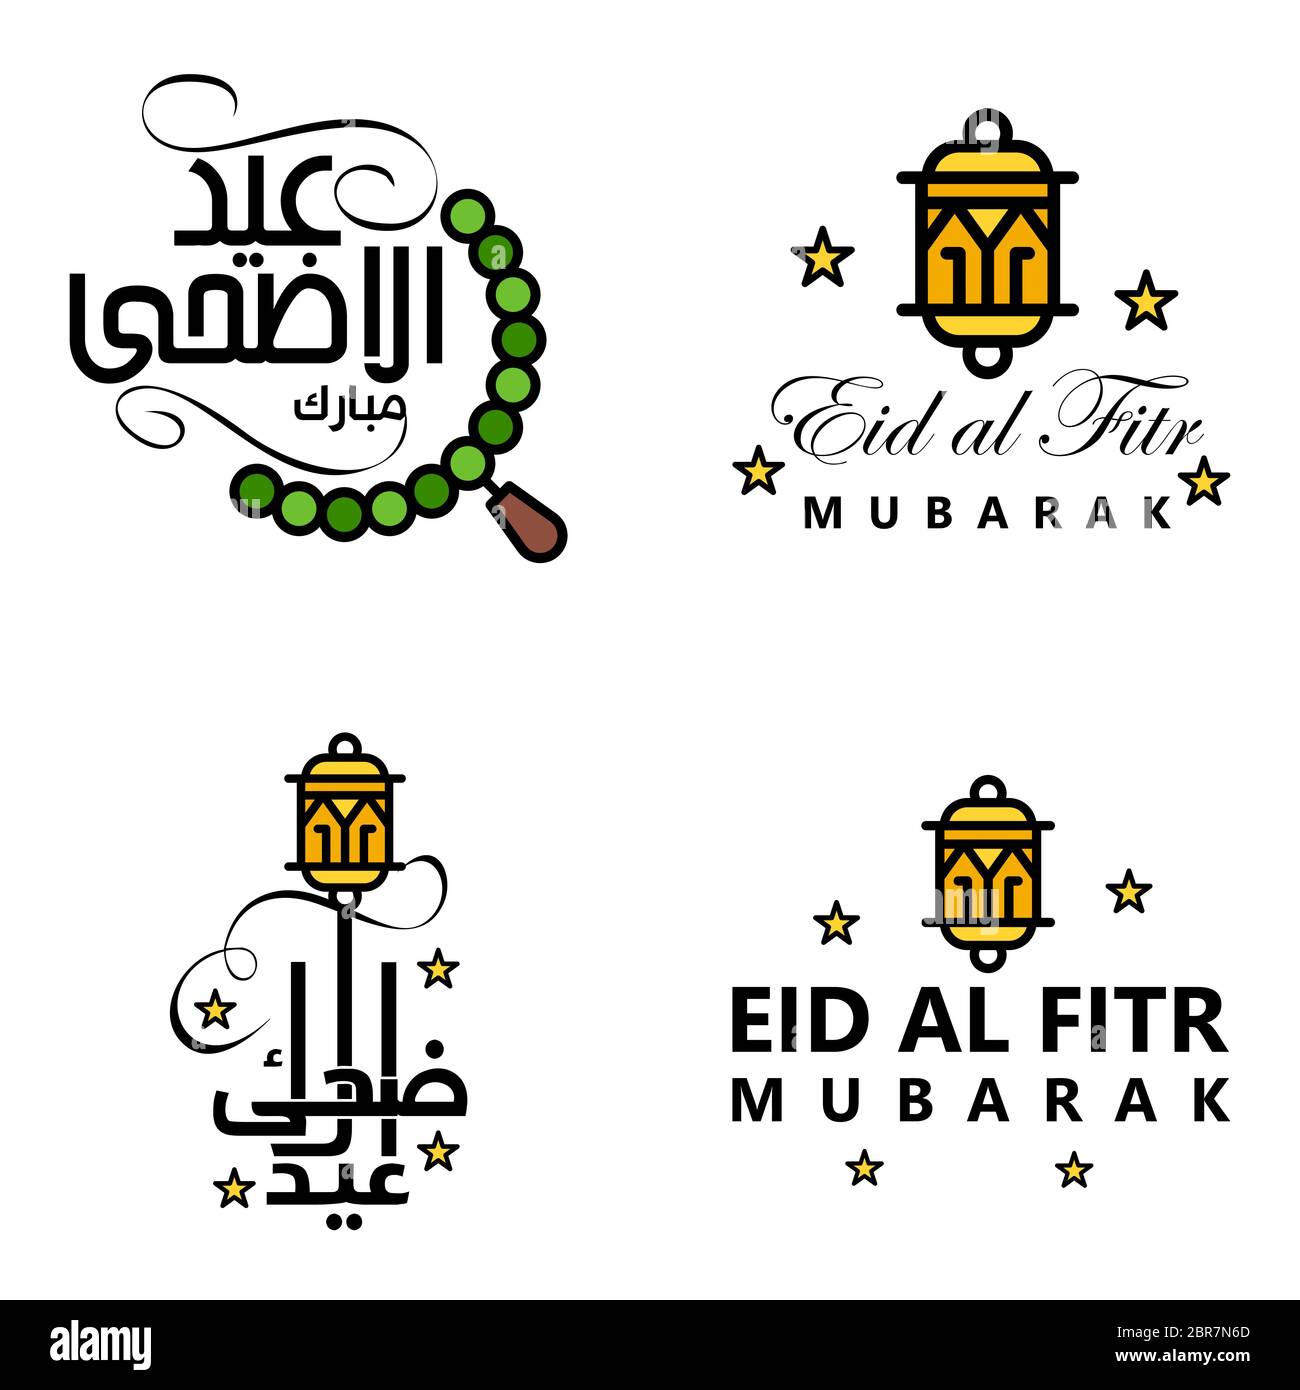 4 Moderne Eid Fitr Grüße In Arabischer Kalligraphie Dekorative Text Für Grußkarte Und Wünscht Den Glücklichen Eid Zu Diesem Religiösen Anlass Stock Vektor